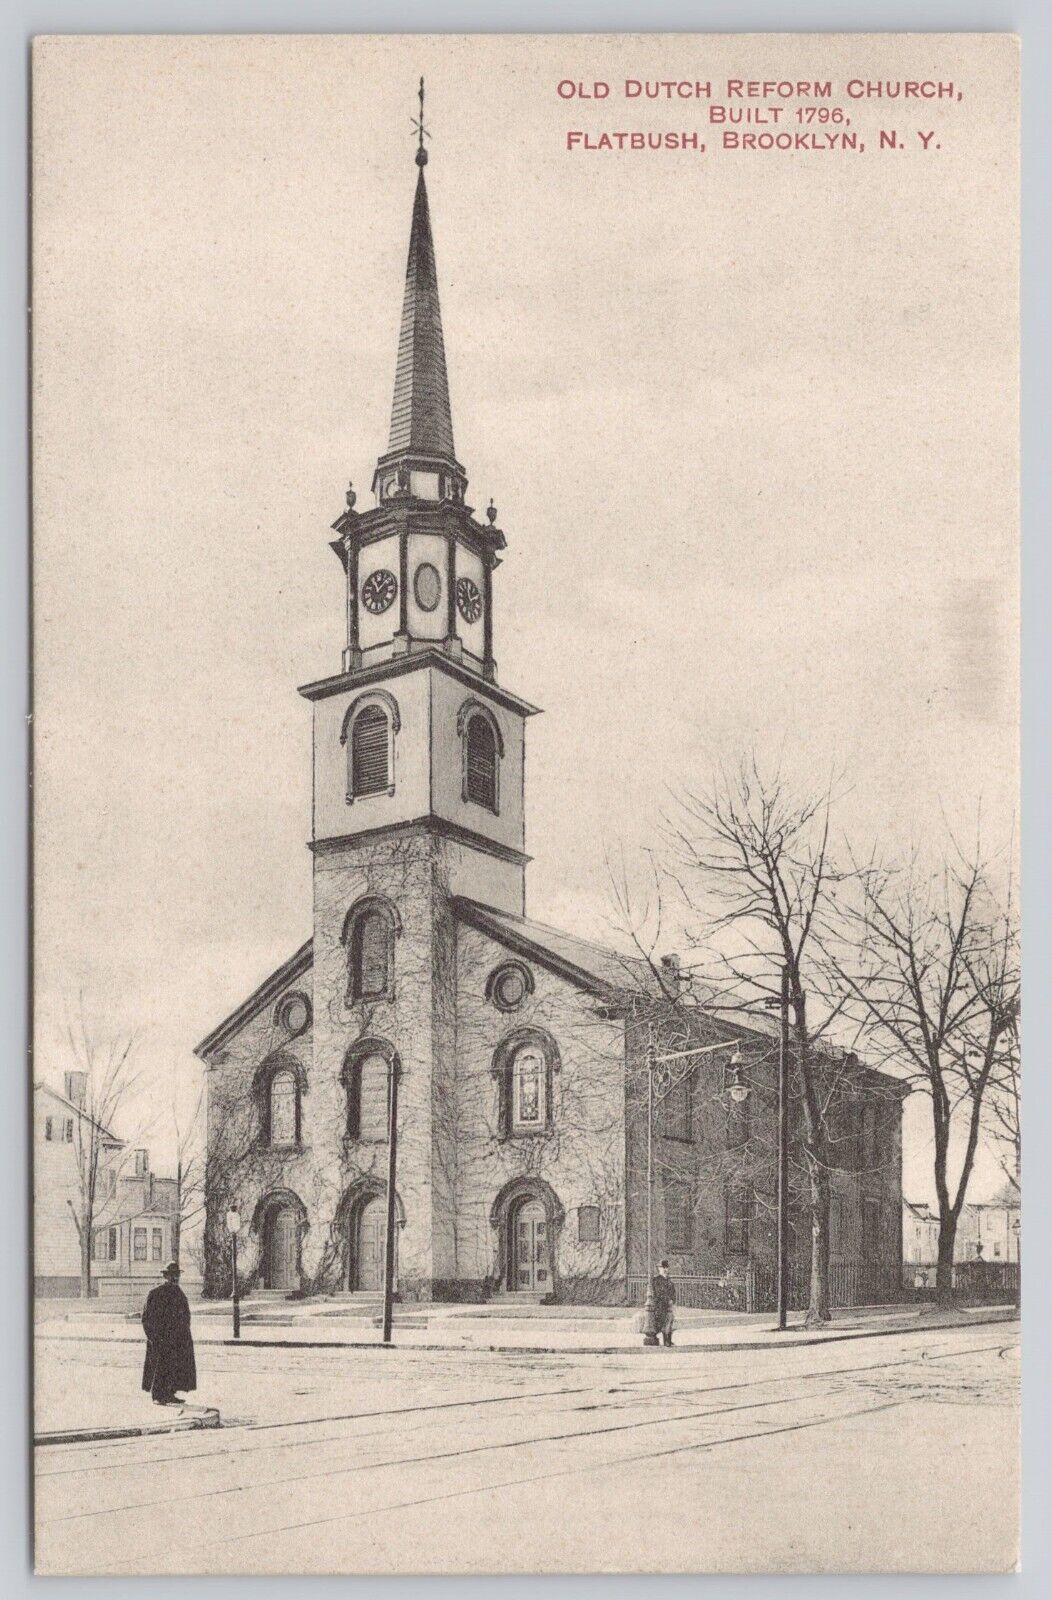 VTG Post Card Old Dutch Reform Church, Built 1796 Flatbush Brooklyn, N.Y. A176